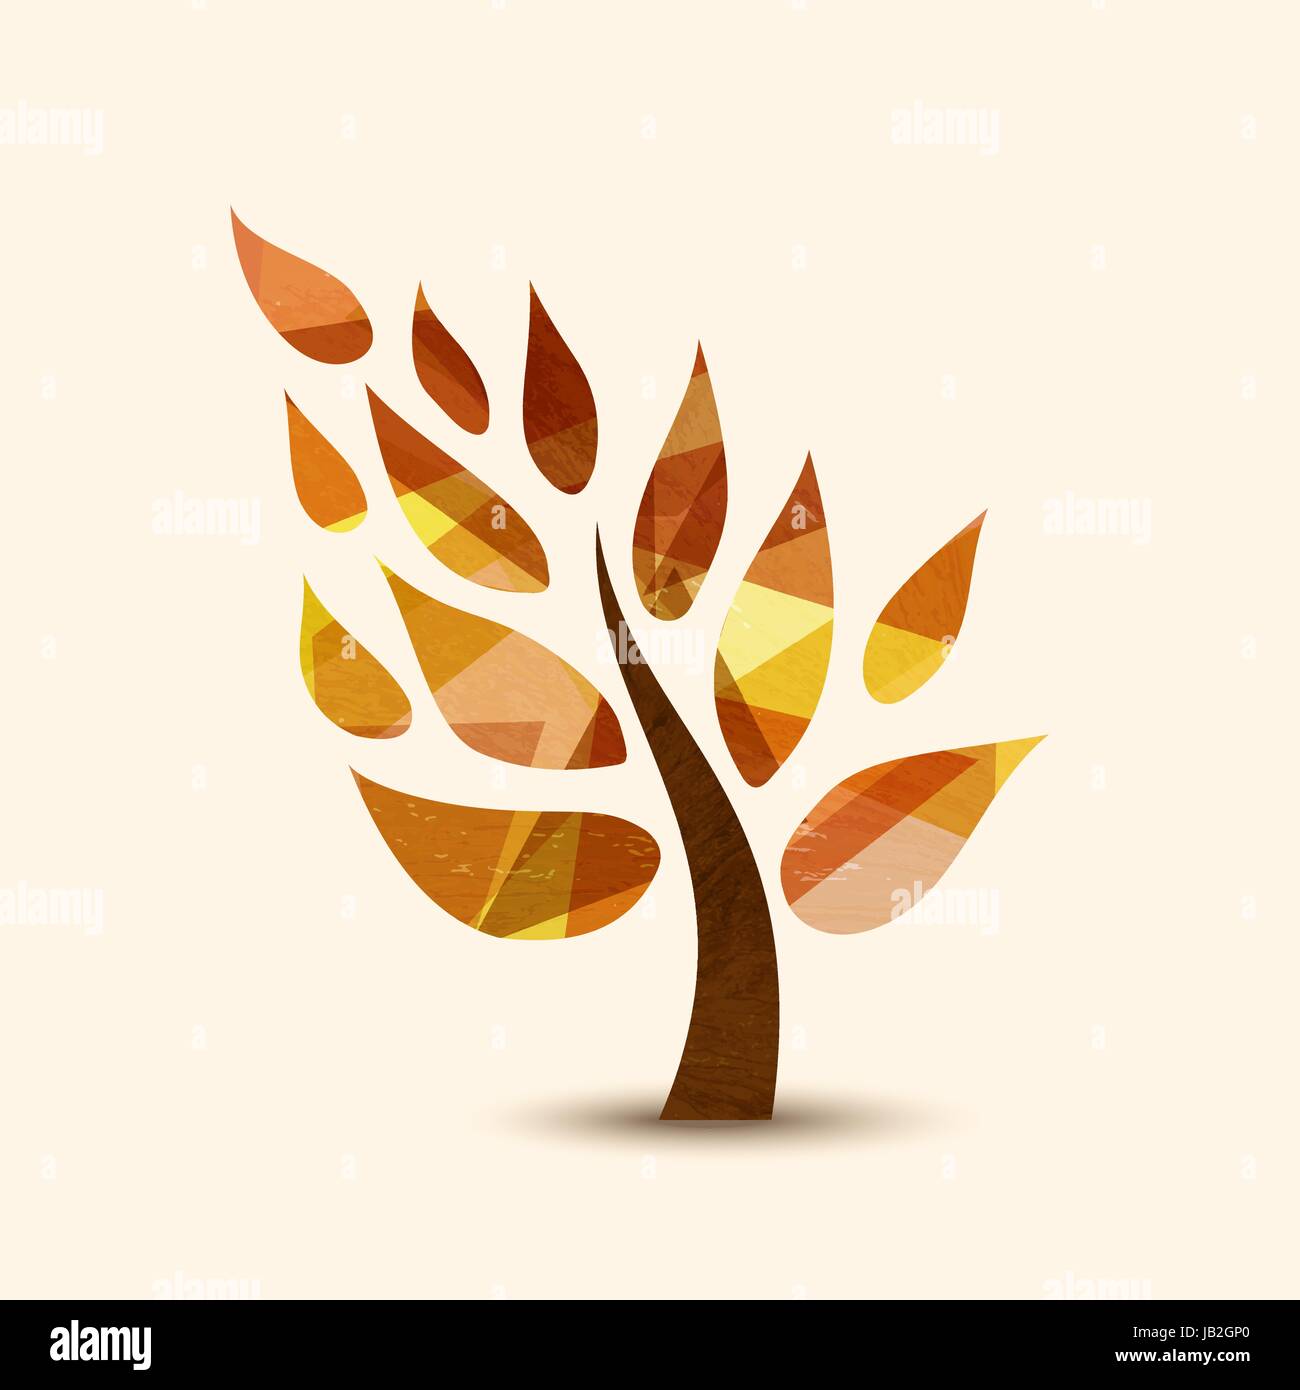 Einfachen Baum-Symbol mit Herbstlaub. Konzept-Illustration für Umwelt-Pflege oder Natur-Help-Projekt. EPS10 Vektor. Stock Vektor